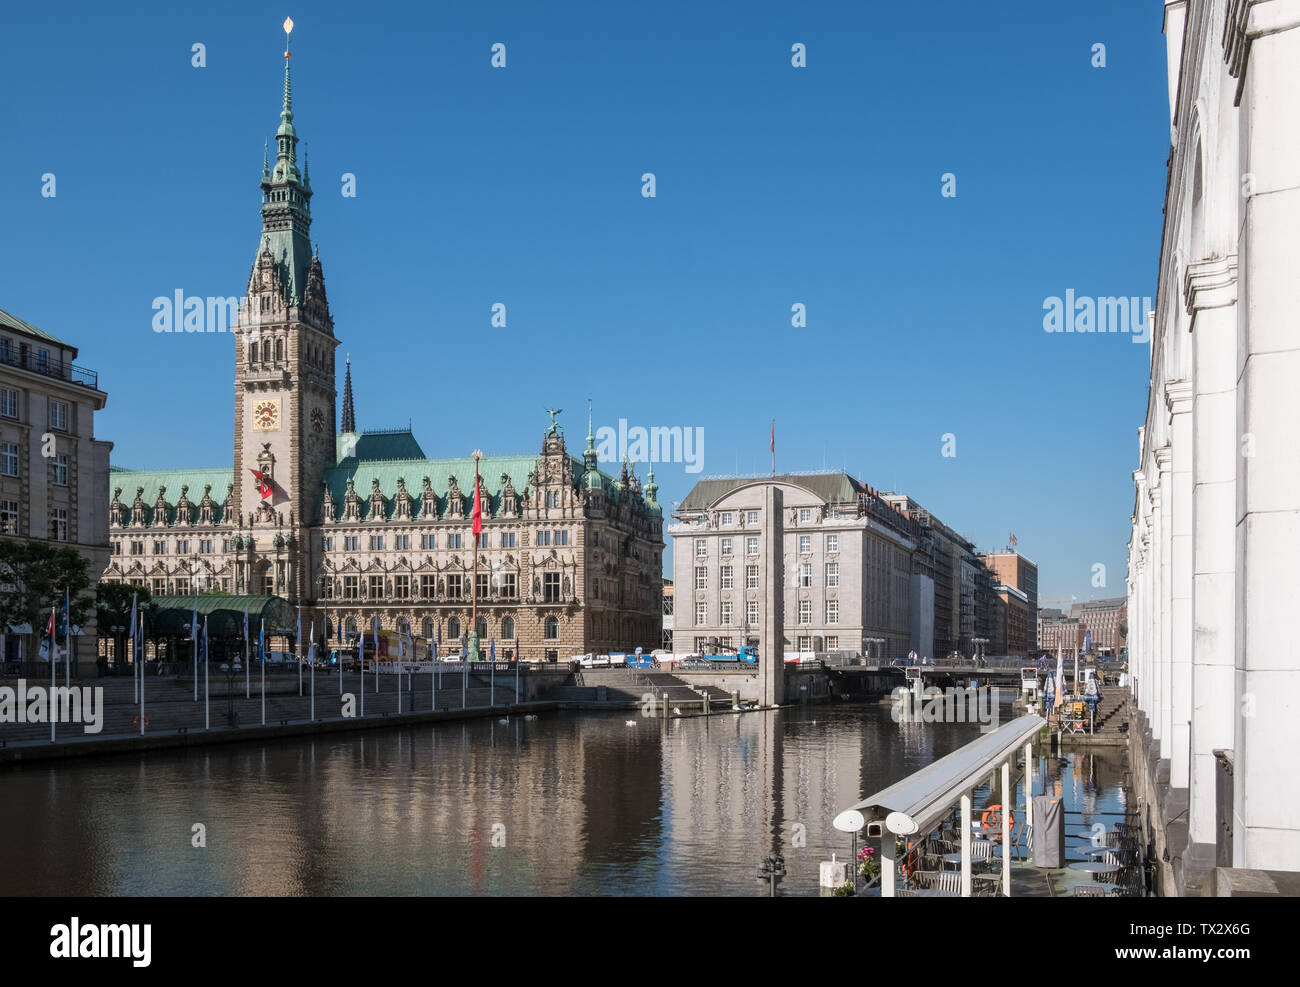 Blick auf Hamburg City Hall (Rathaus), ein neo-renaissance Gebäude und Wahrzeichen der Stadt in der Altstadt, Hamburg, Deutschland Stockfoto